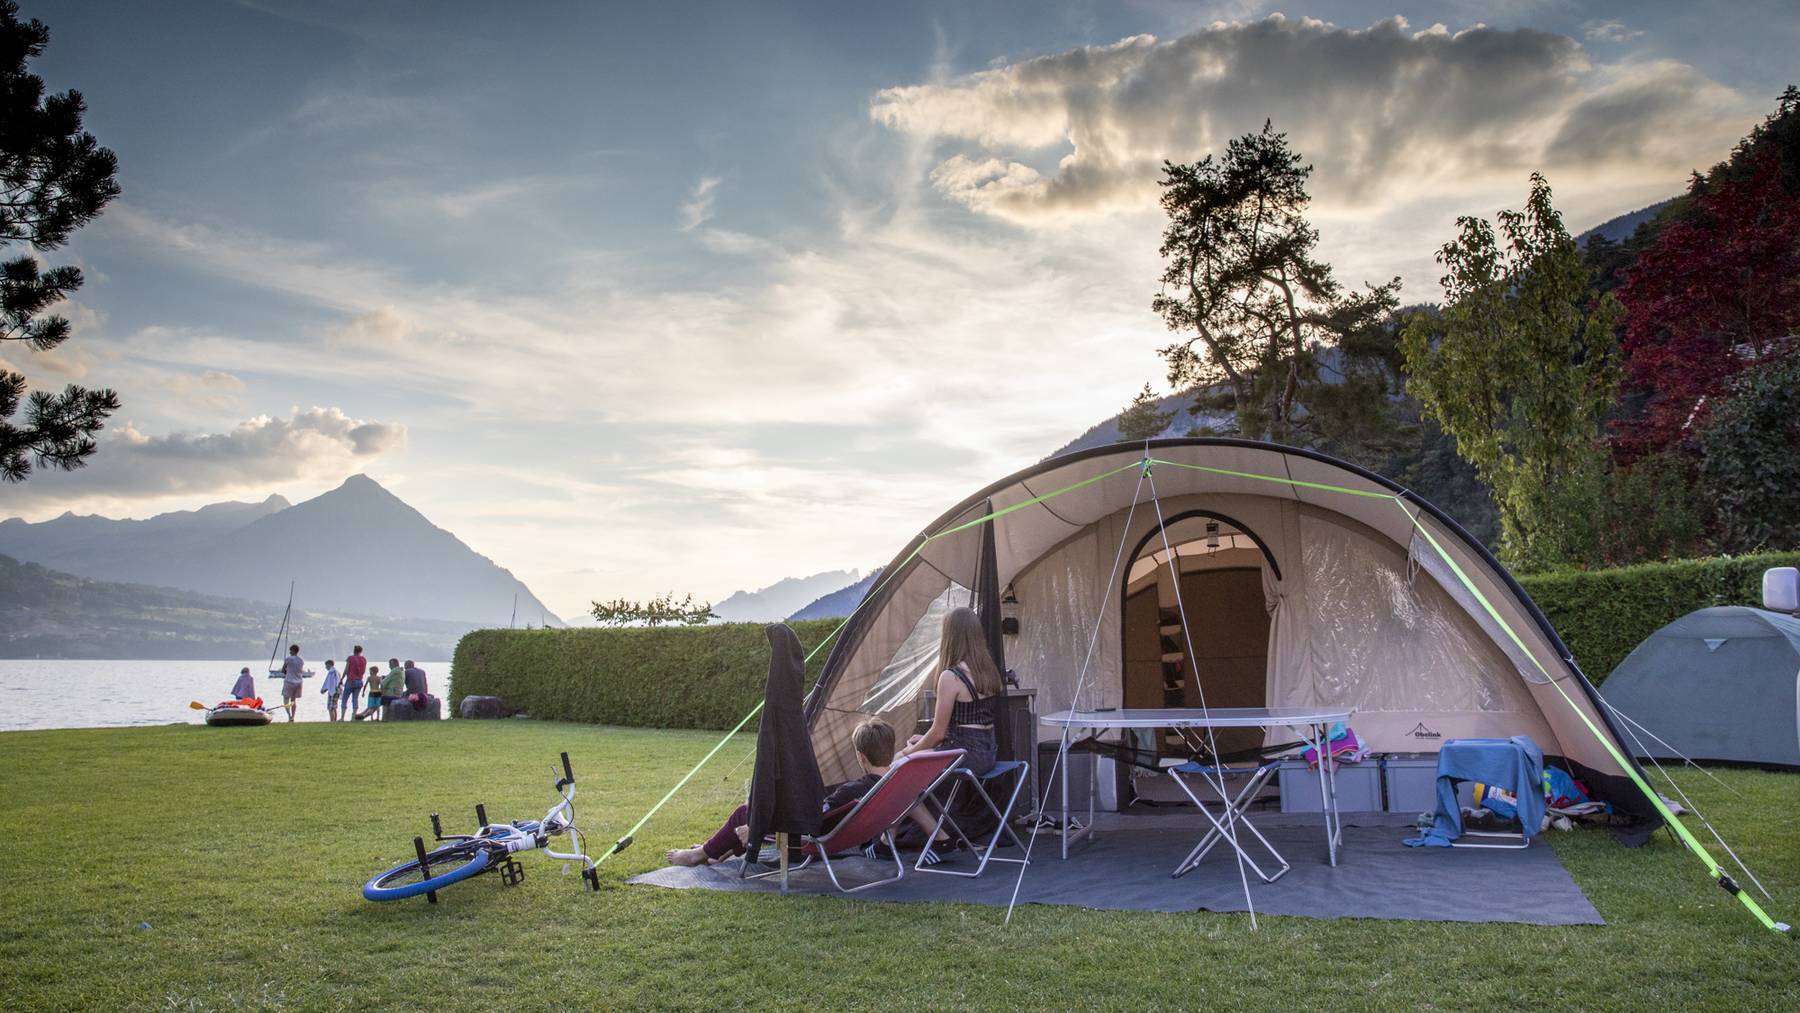 Im Sommer sind im Kanton Bern vor allem Campingplätze am See beliebt. Im Bild: Das Camping Manor Farm in Unterseen am Thunersee.